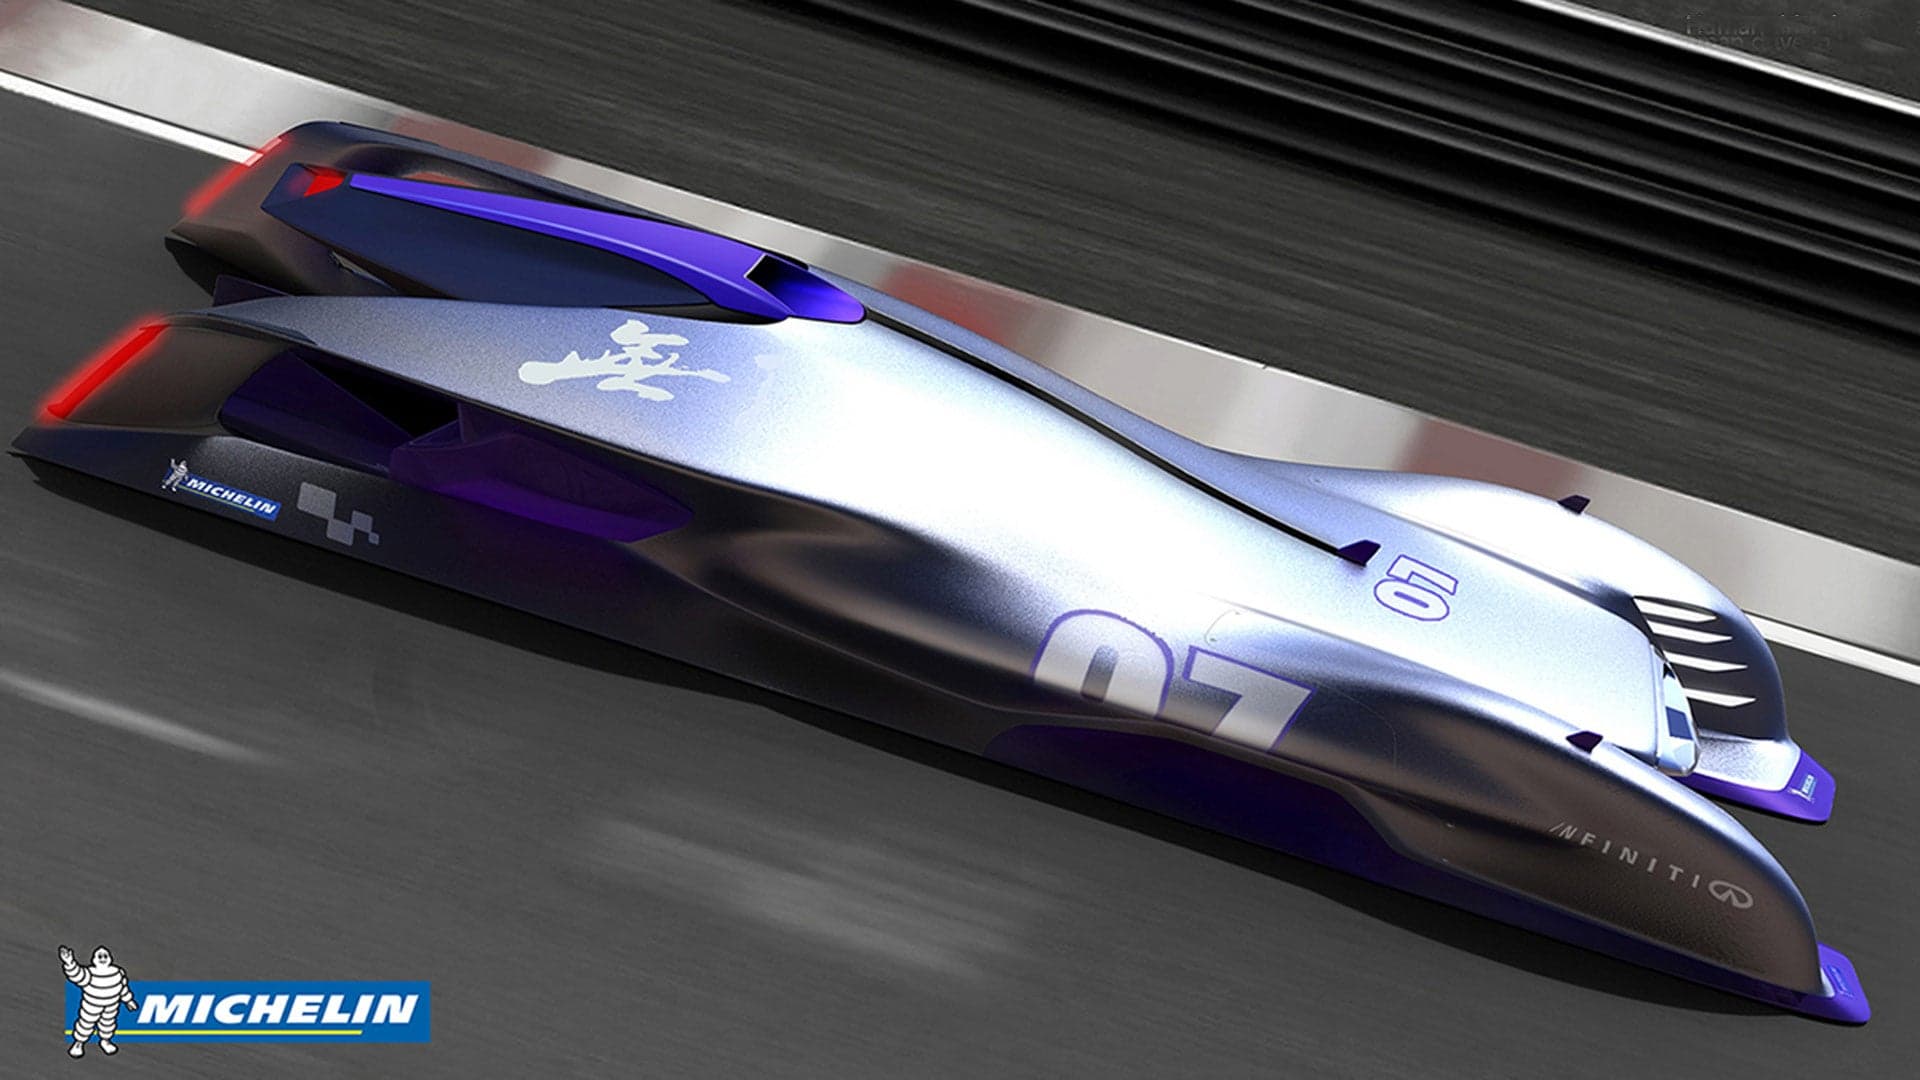 Michelin Reveals “Le Mans 2030” Race Car Design Competition Winners